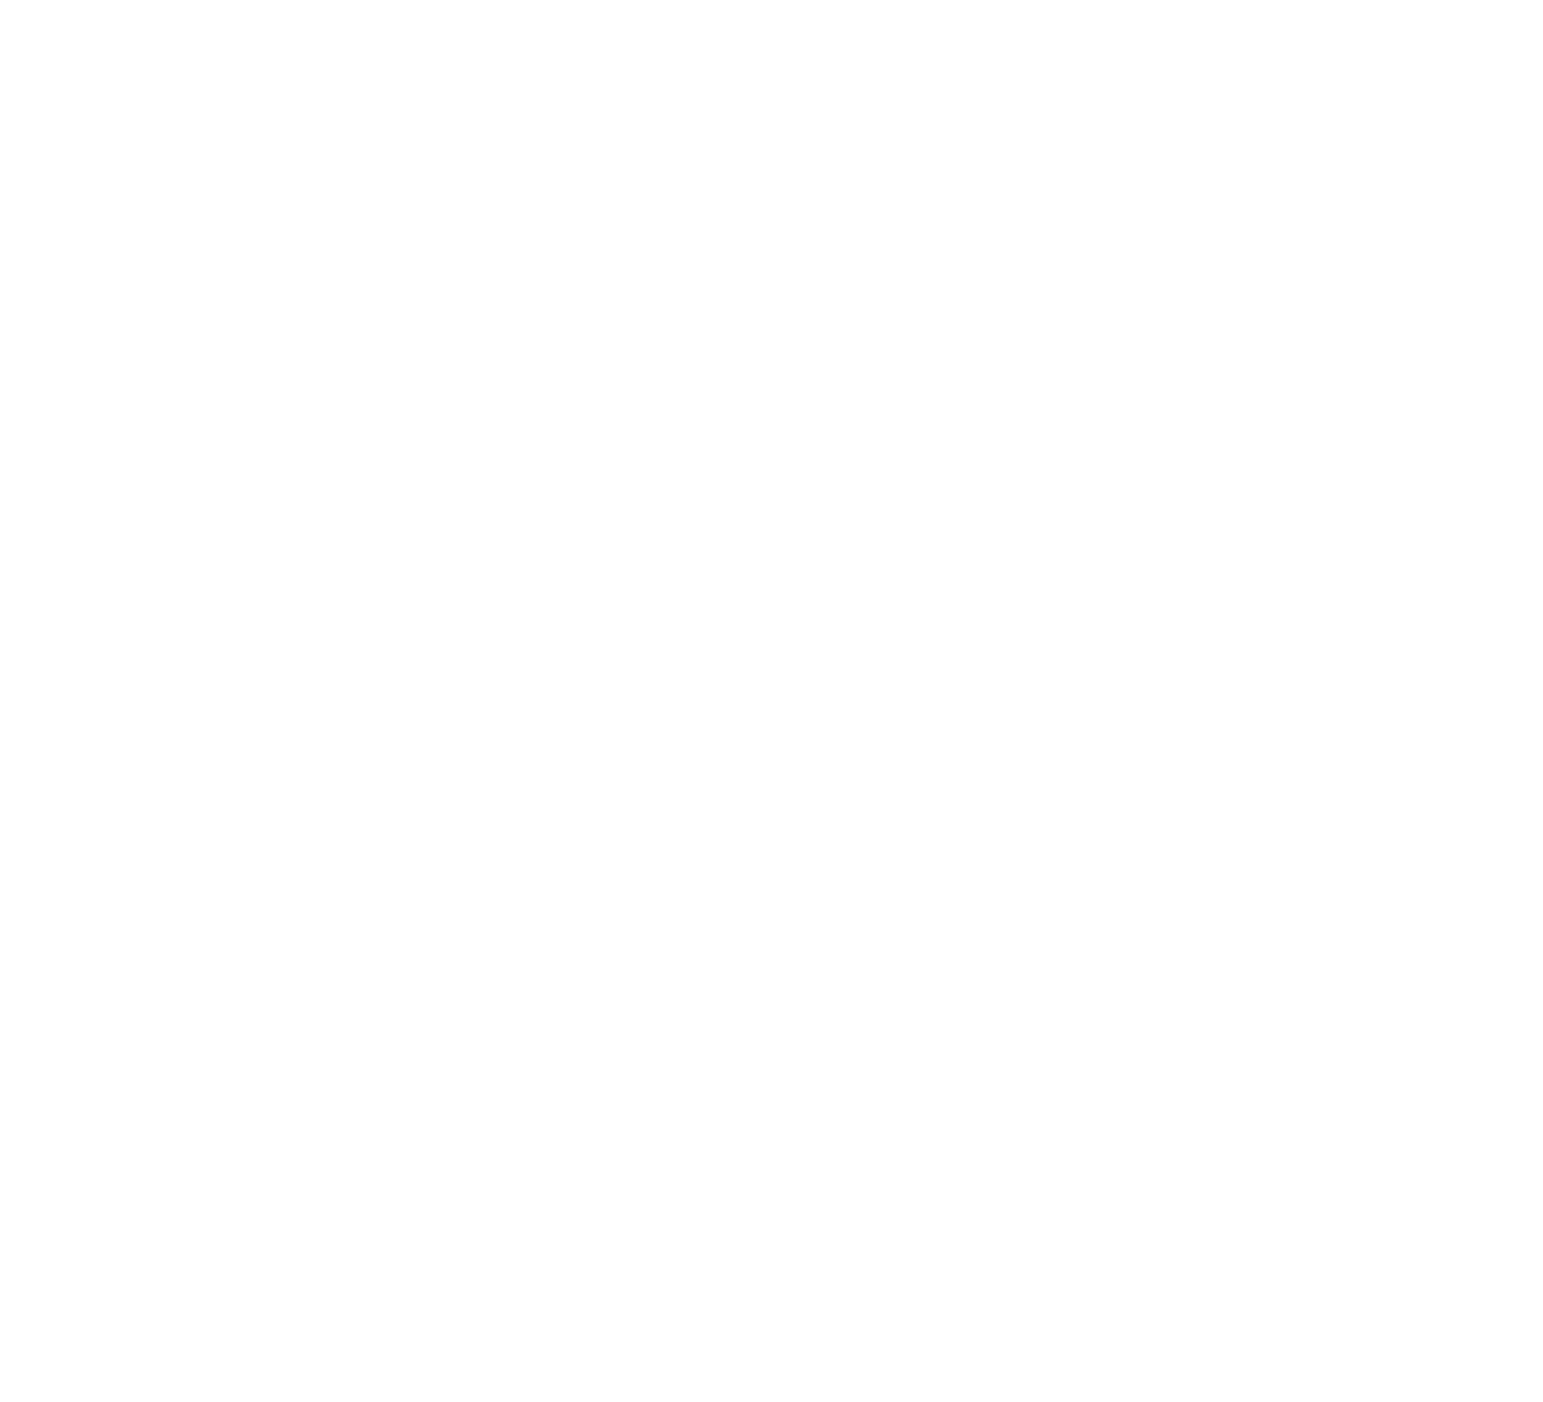 Amplify ETF Trust logo pour fonds sombres (PNG transparent)